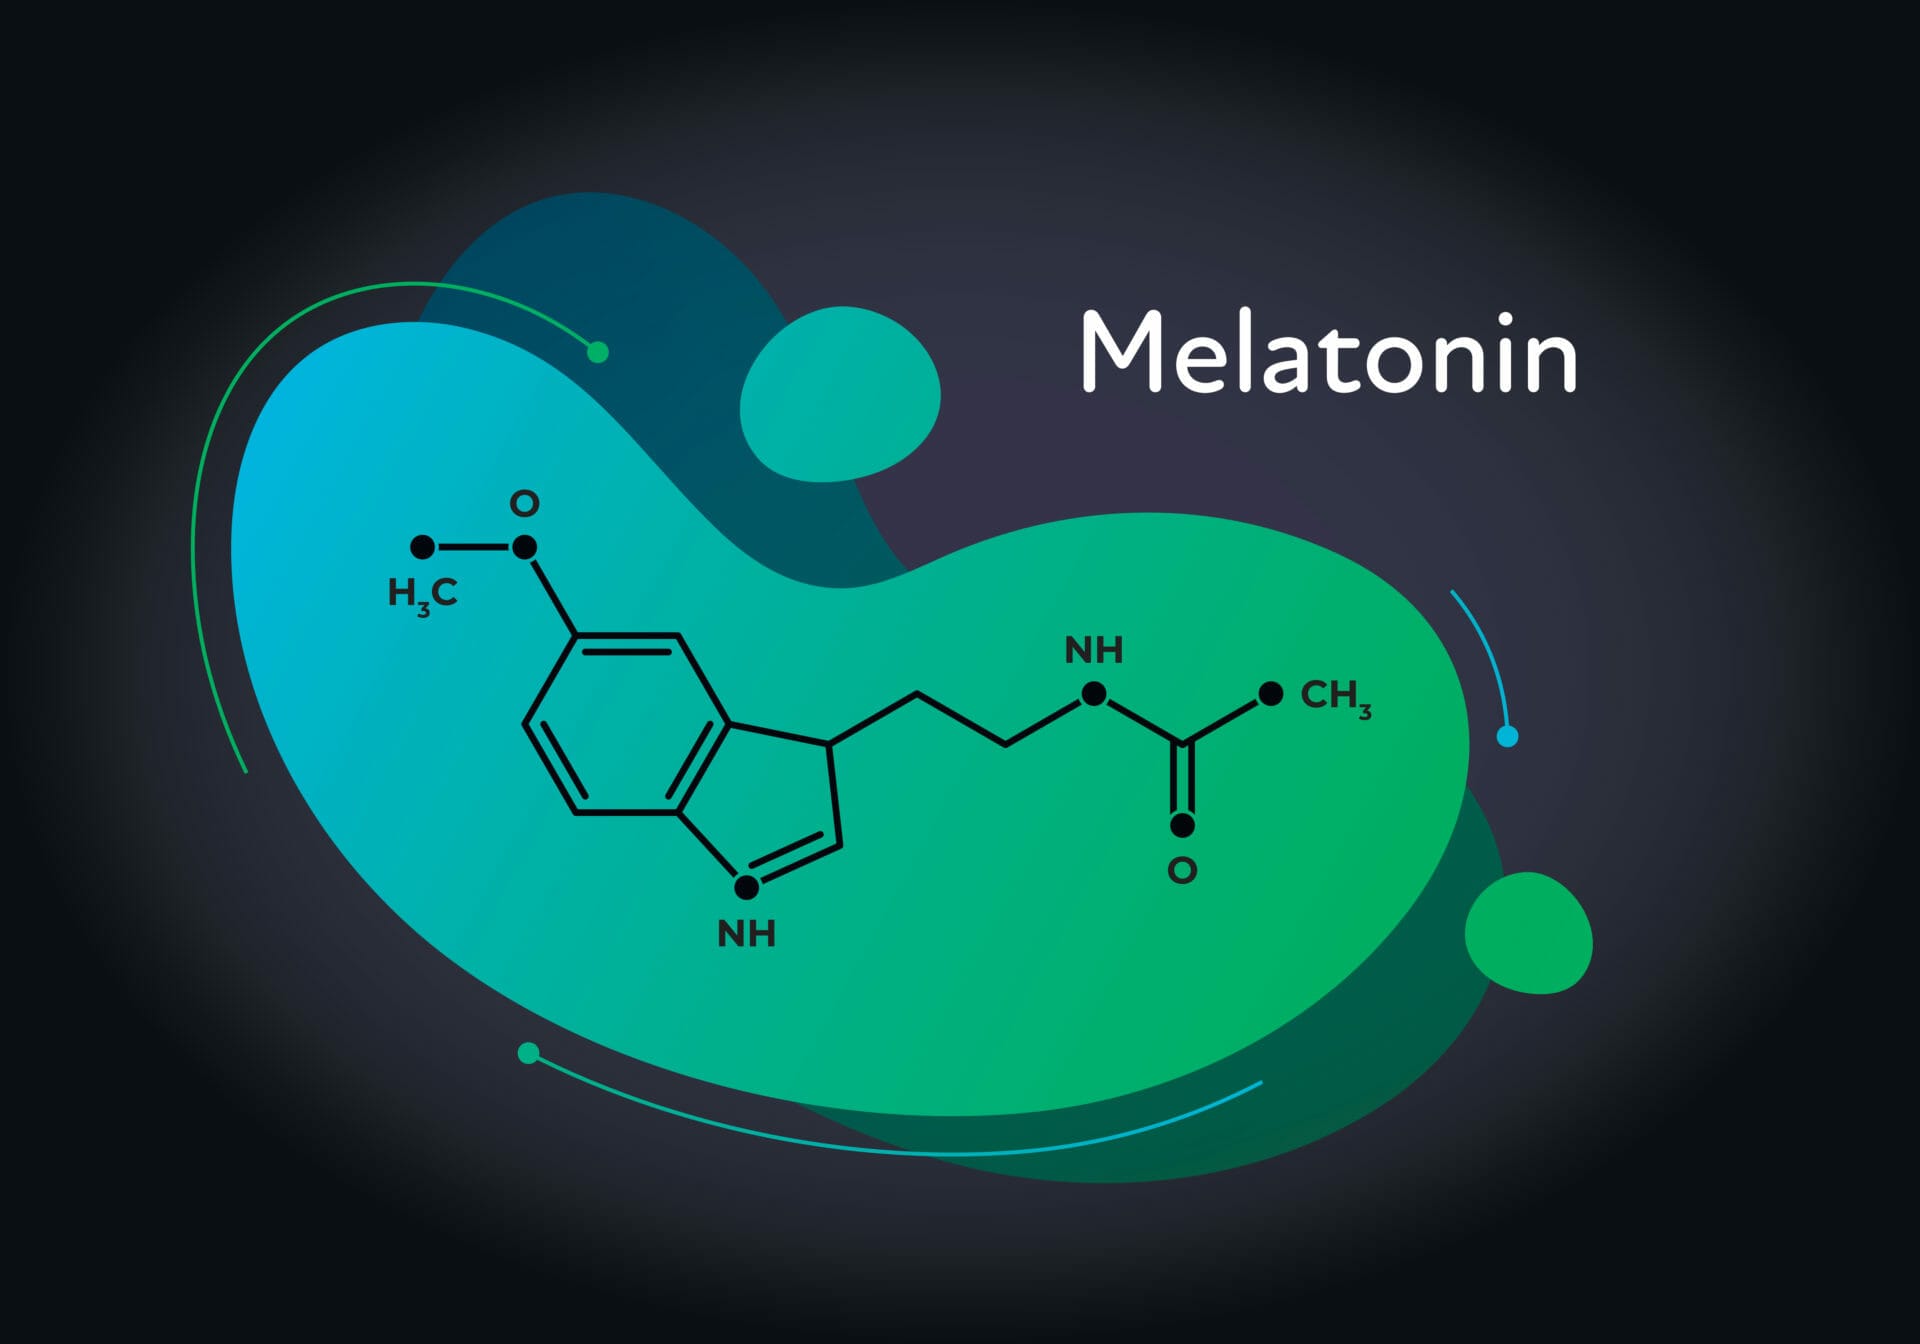 Sleep hormone melatonin